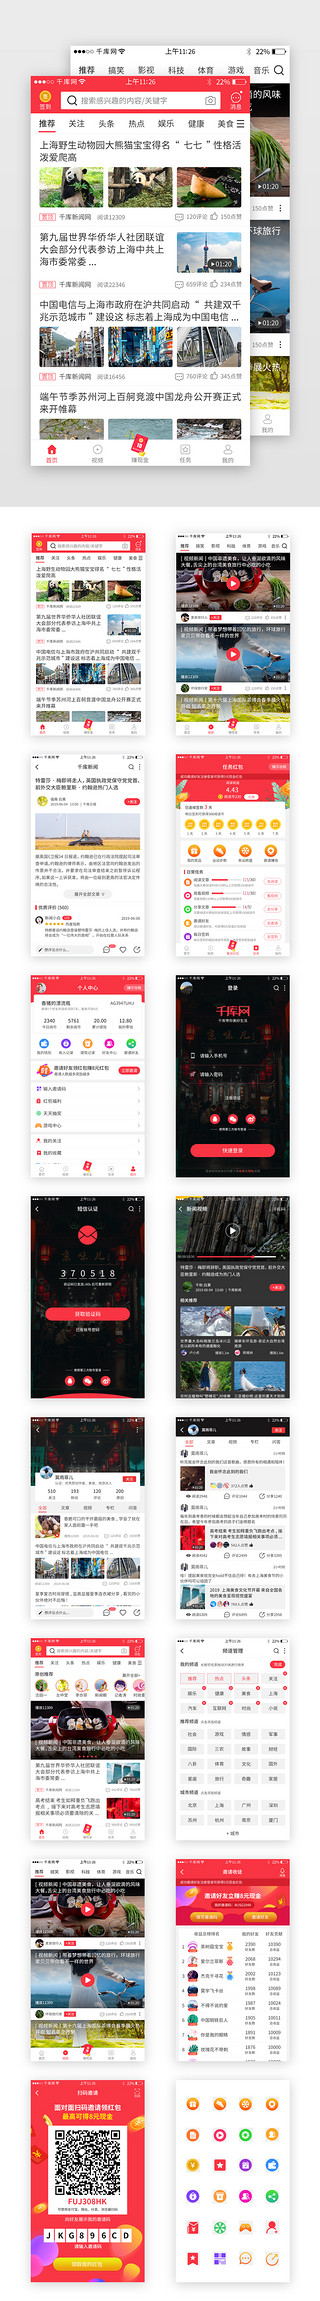 视频app套图UI设计素材_红色系新闻app套图